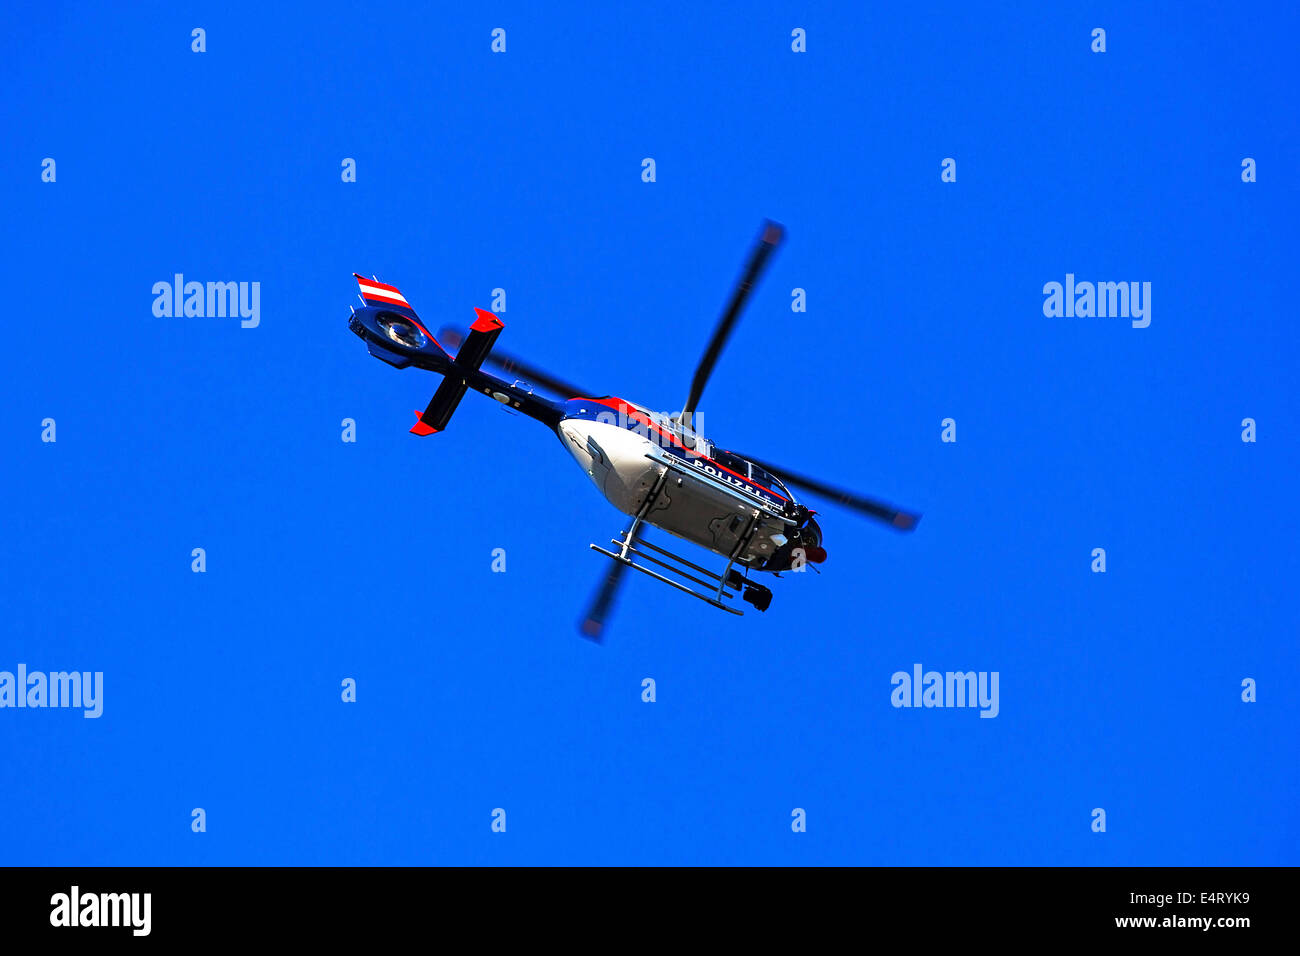 Elicottero nel cielo blu, foto simbolica per la supervisione e il salvataggio, Helikopter am blauen Himmel, Symbolfoto fuer Ueberwachung Foto Stock